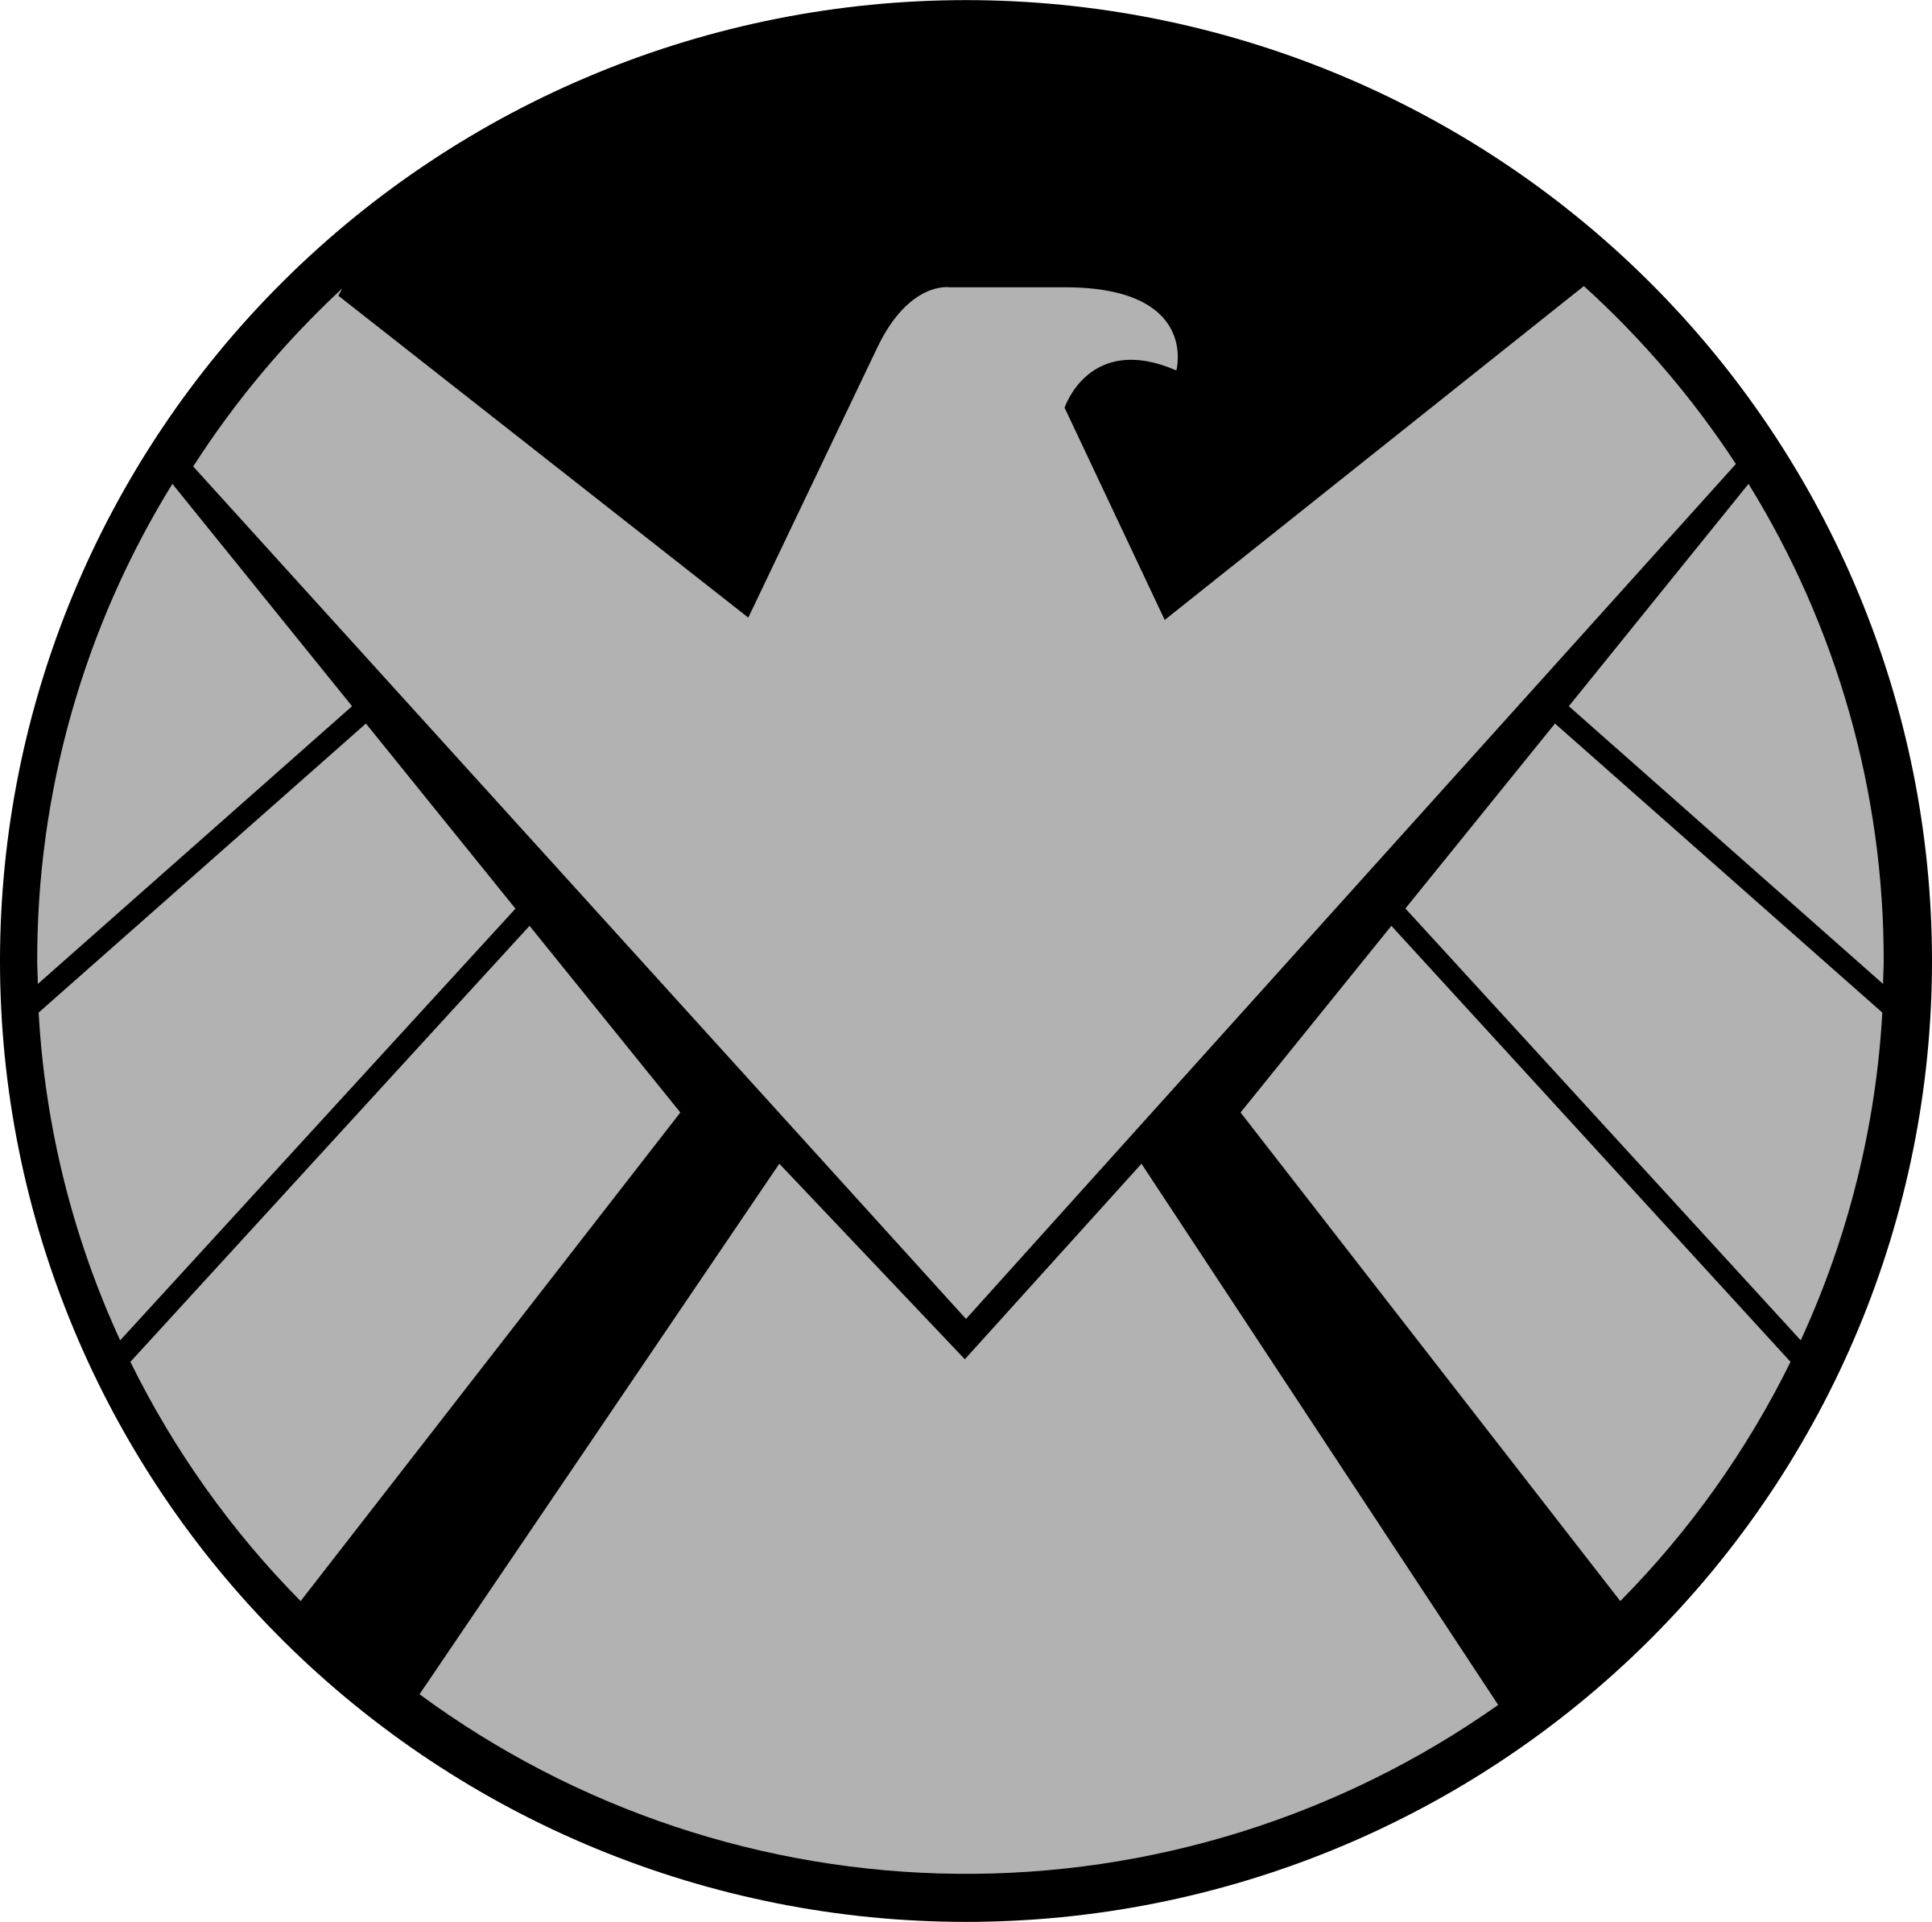 Marvel Shield Logo - Marvel's agents of S.H.I.E.L.D. Logo PNG Transparent & SVG Vector ...